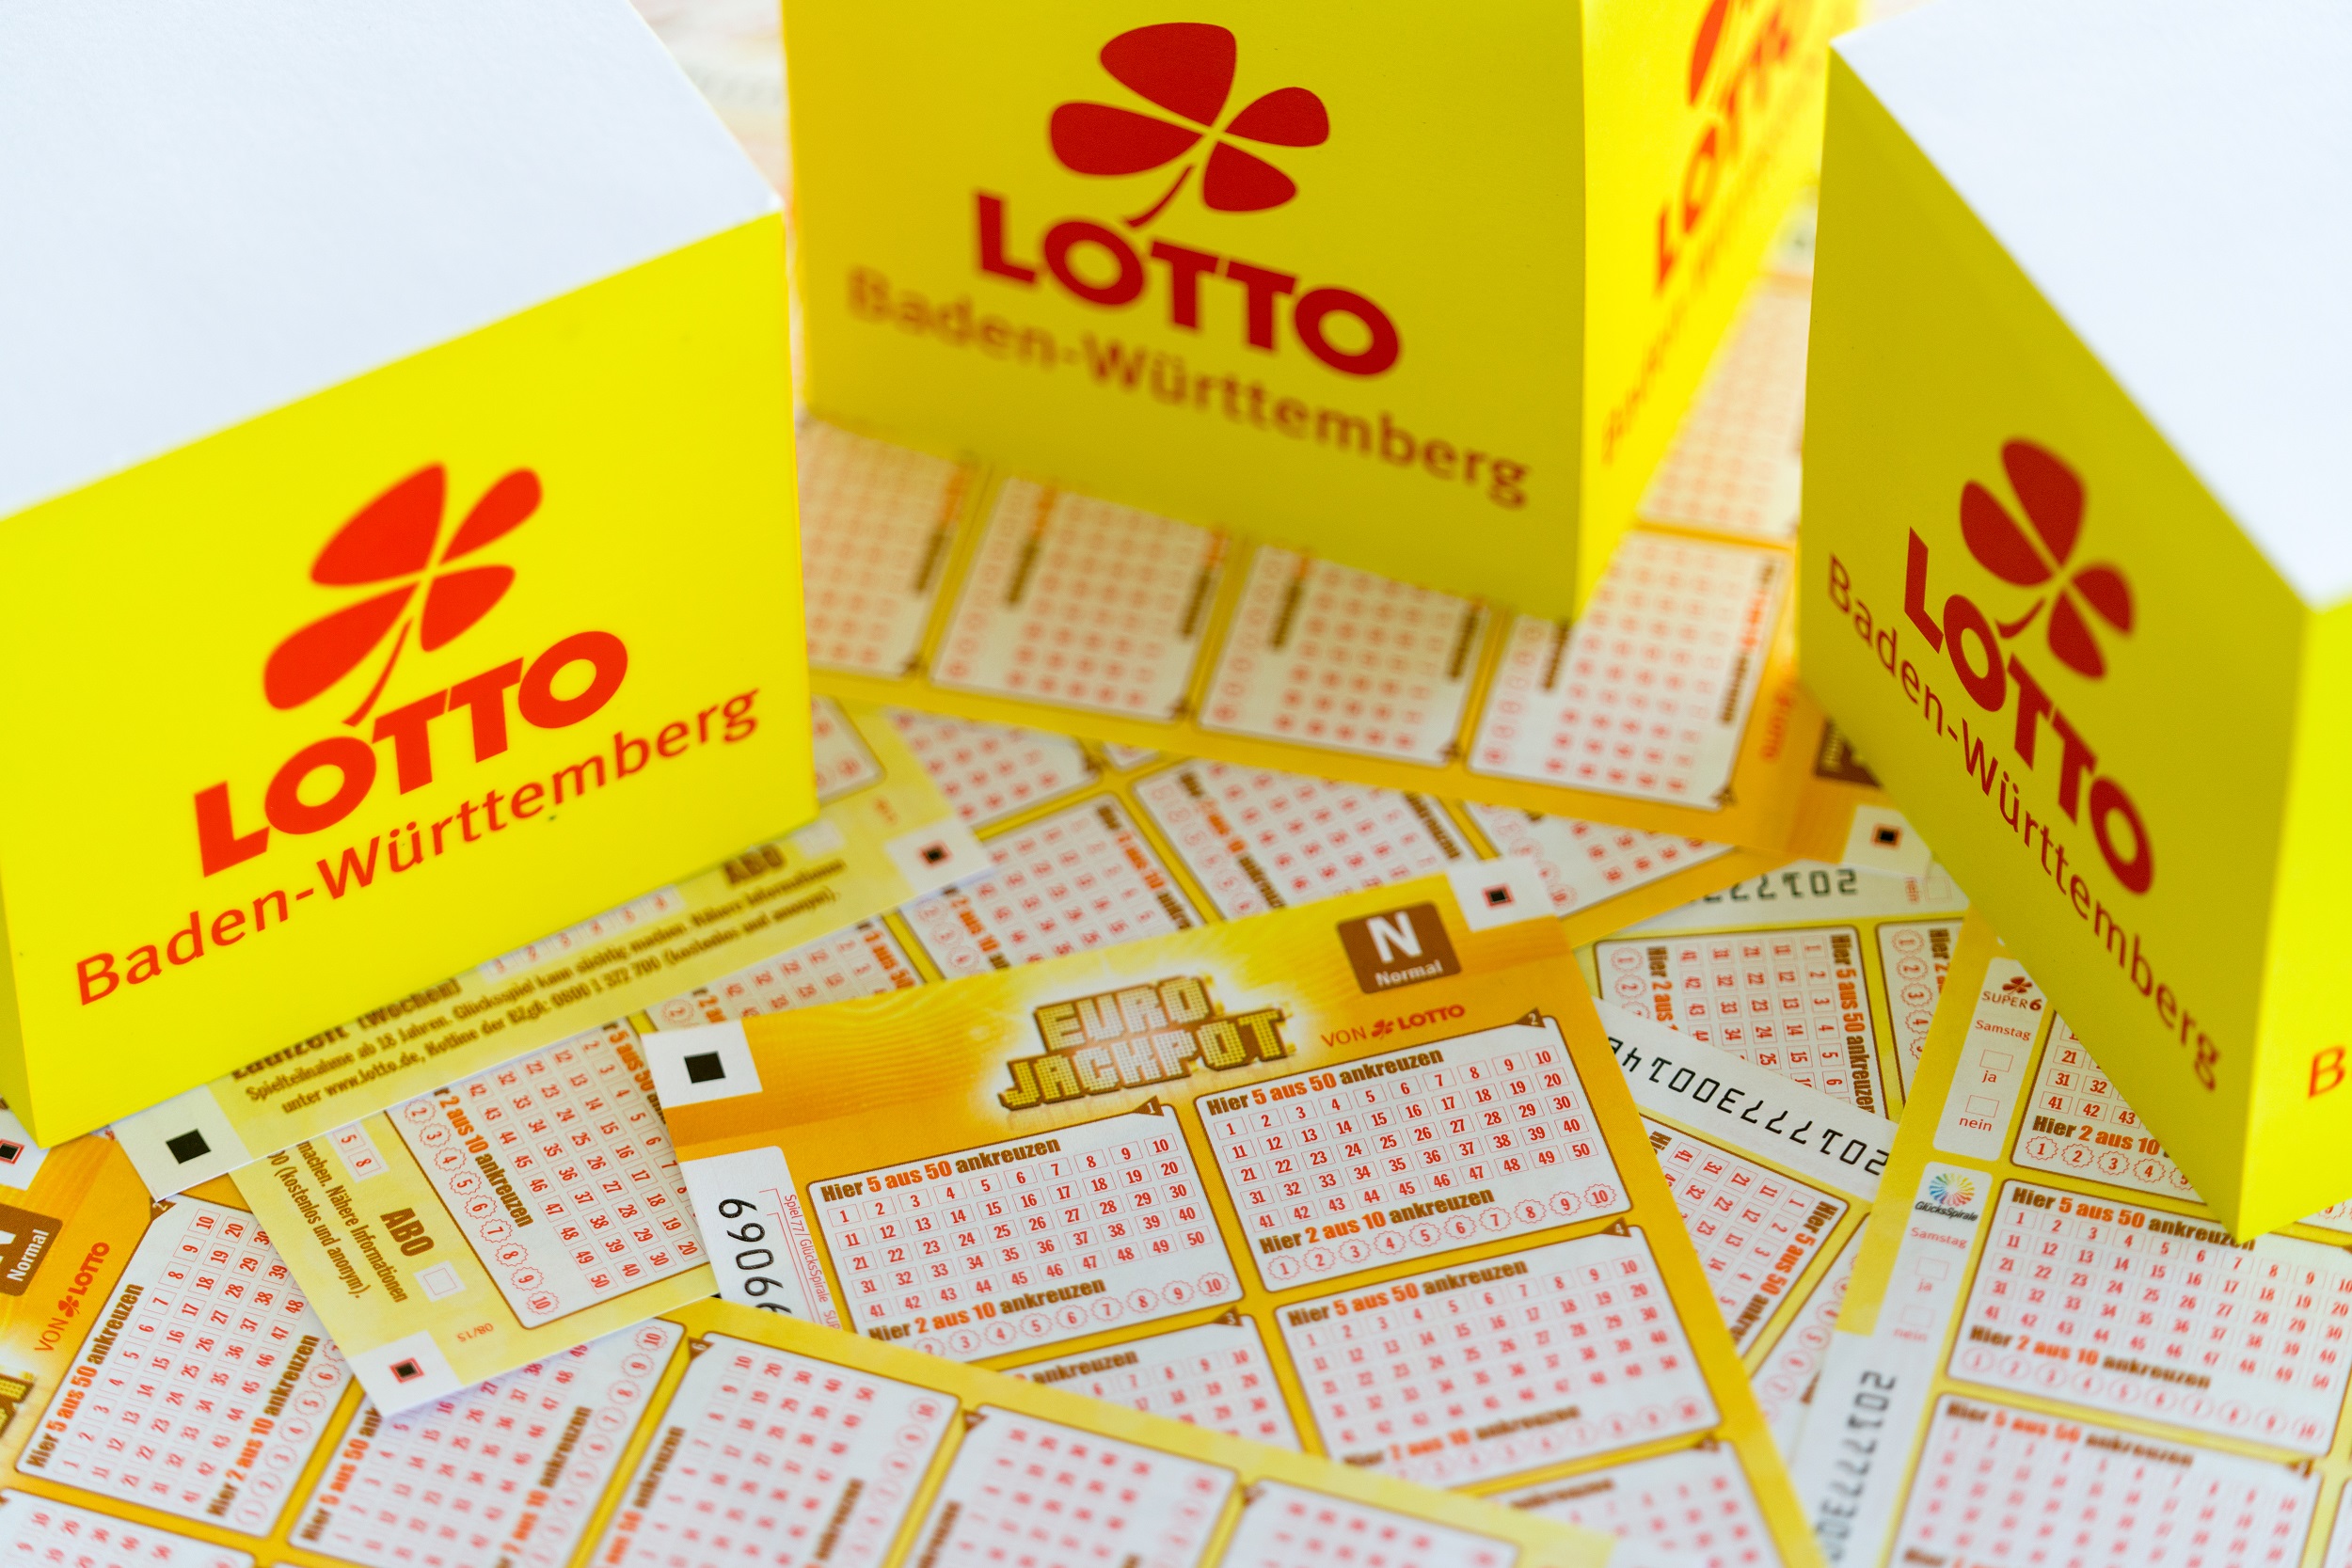 Lotto Annahmestellen Bw